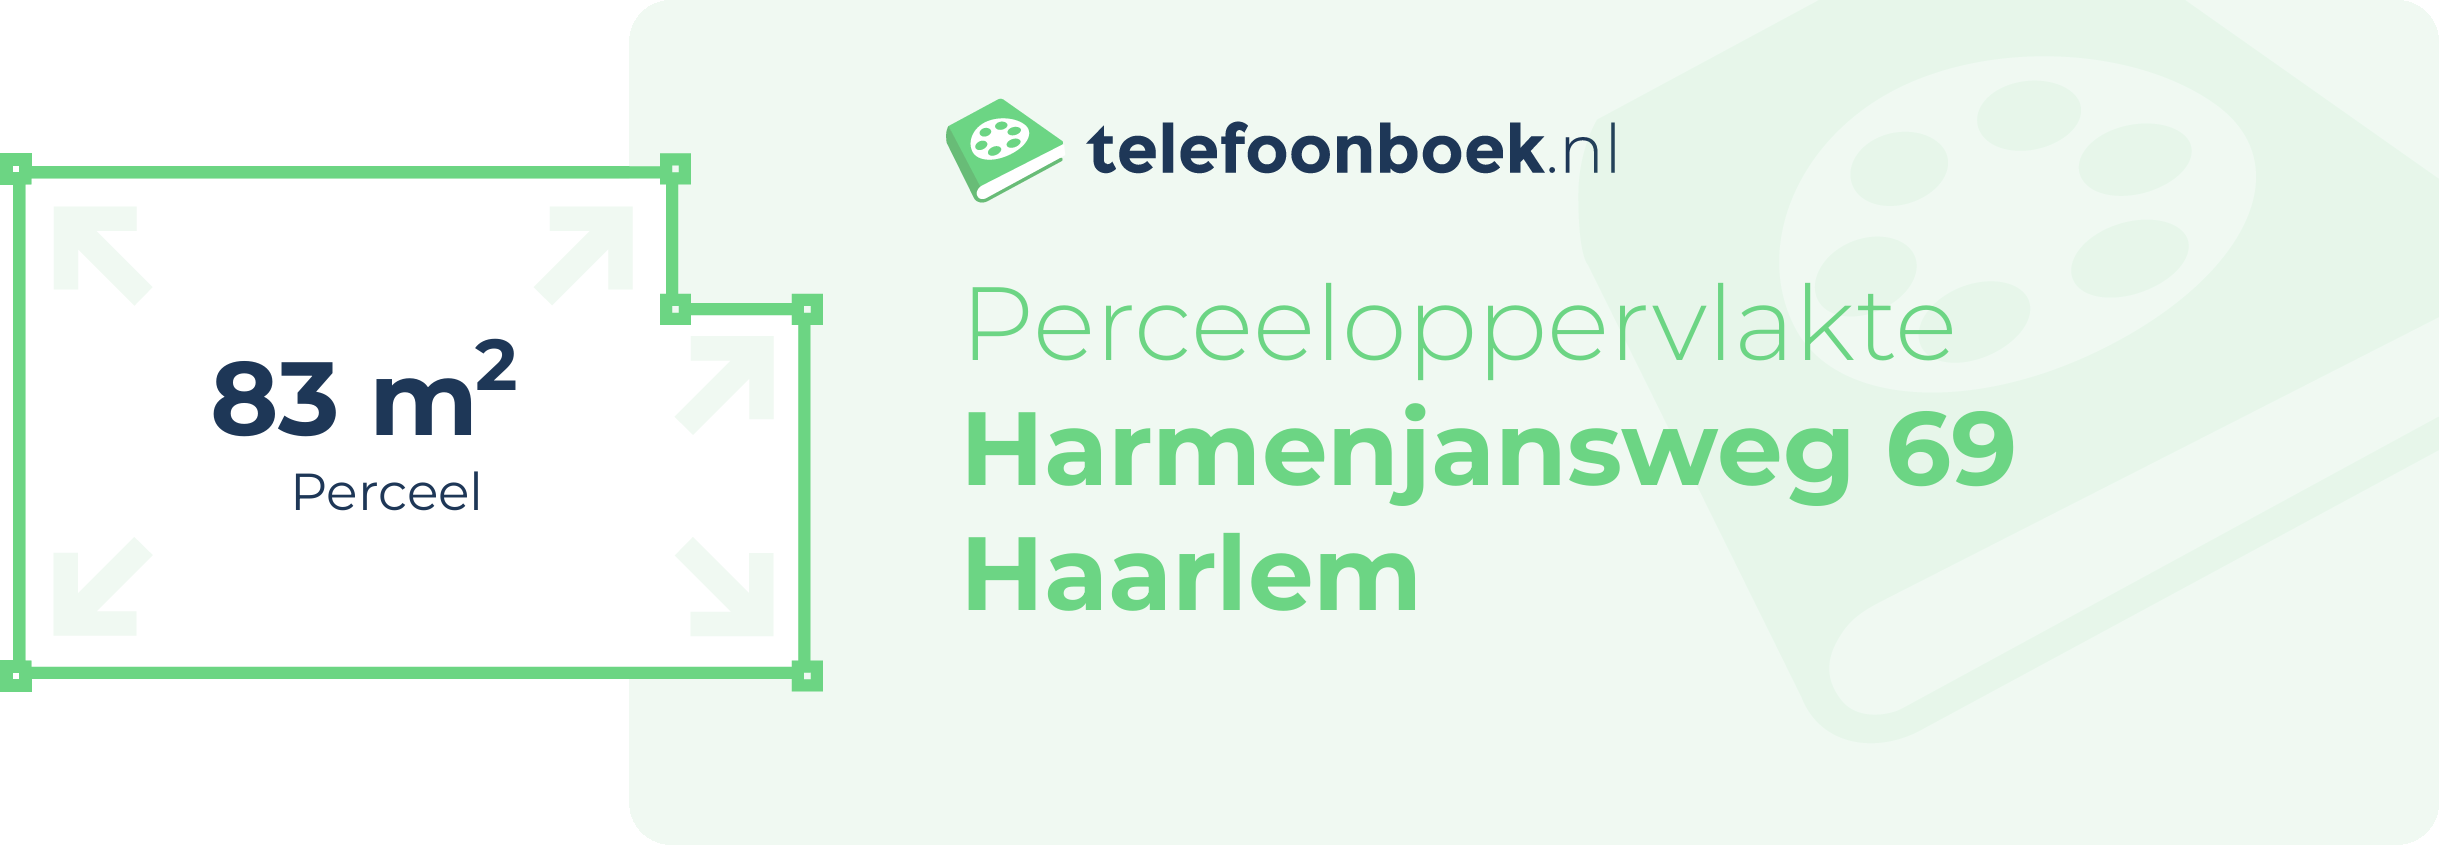 Perceeloppervlakte Harmenjansweg 69 Haarlem